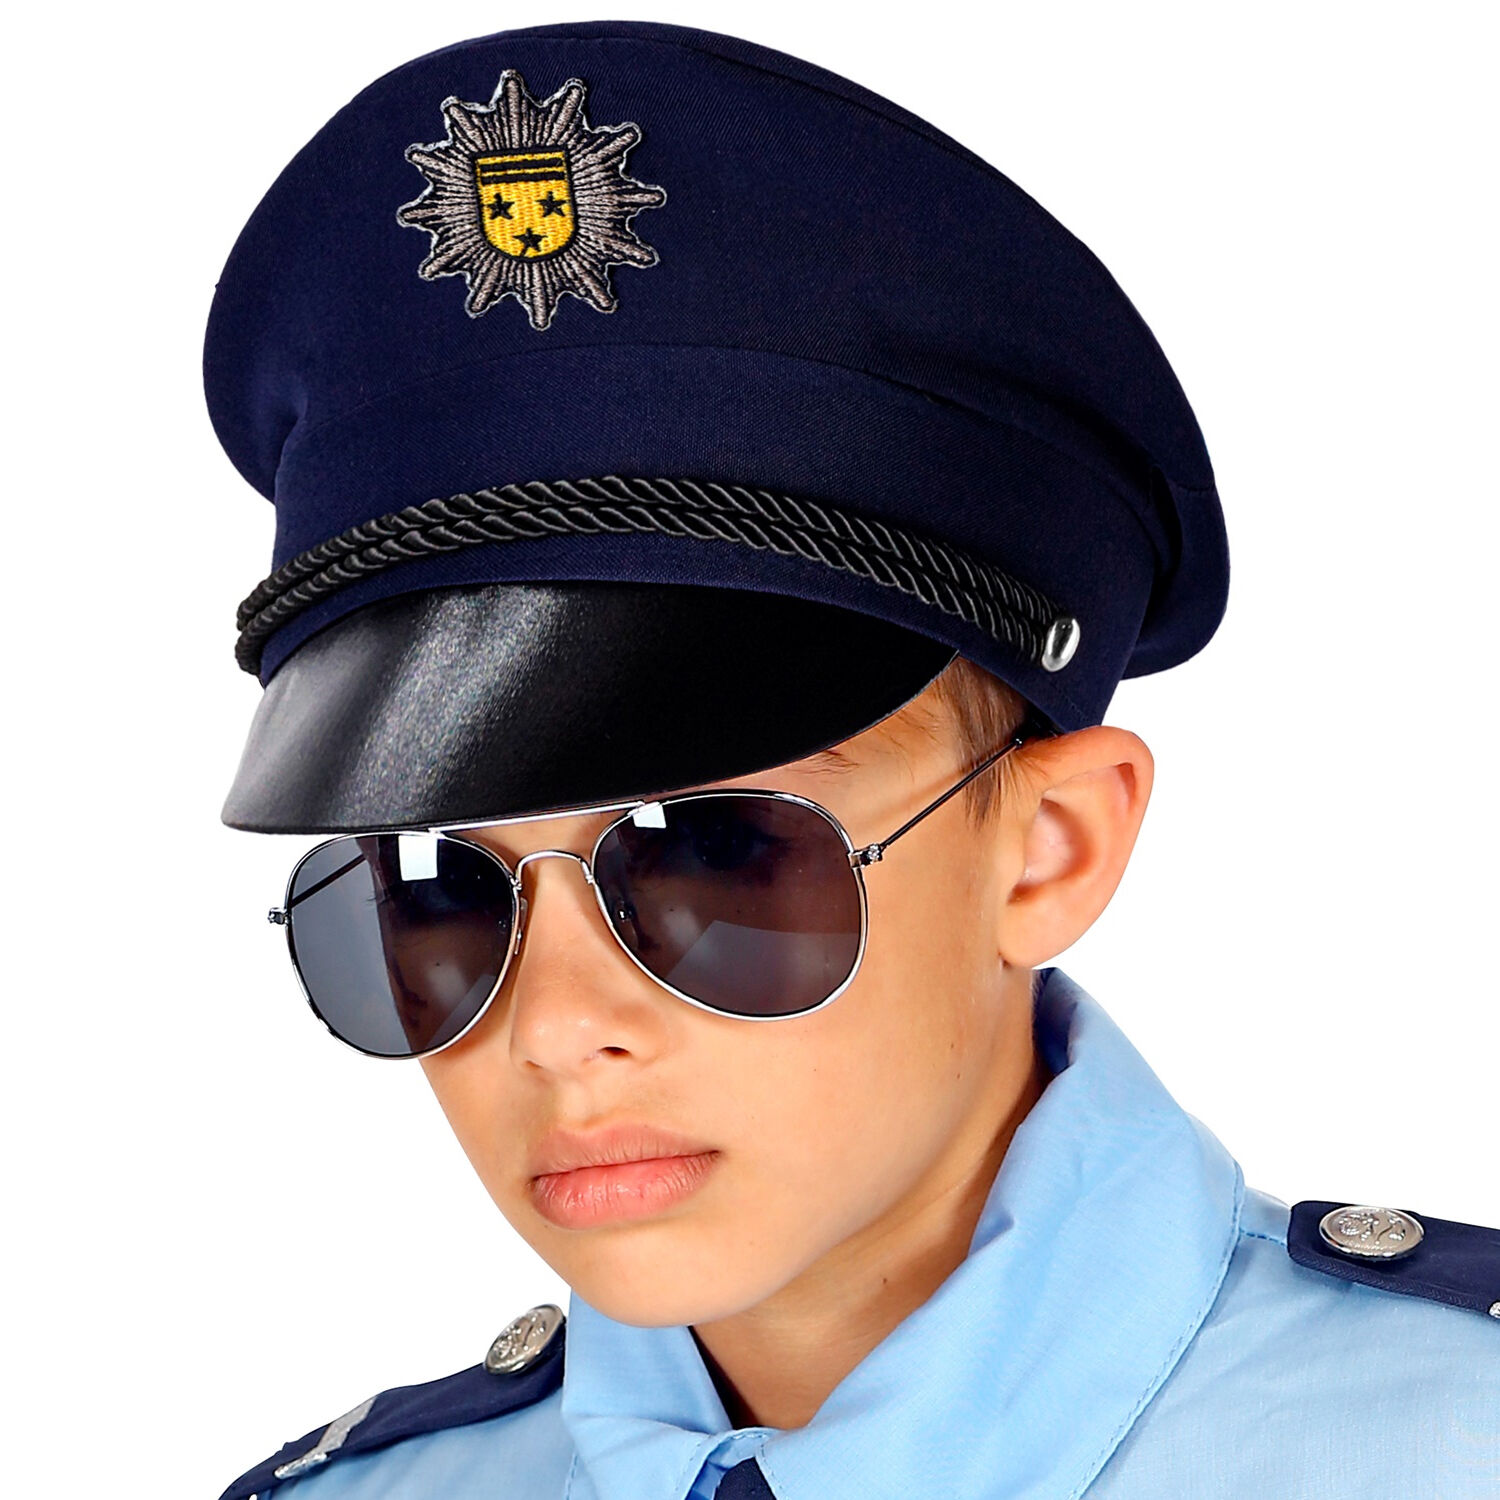 Kinder-Weste Polizei, blau, verschiedene Größen (104-140